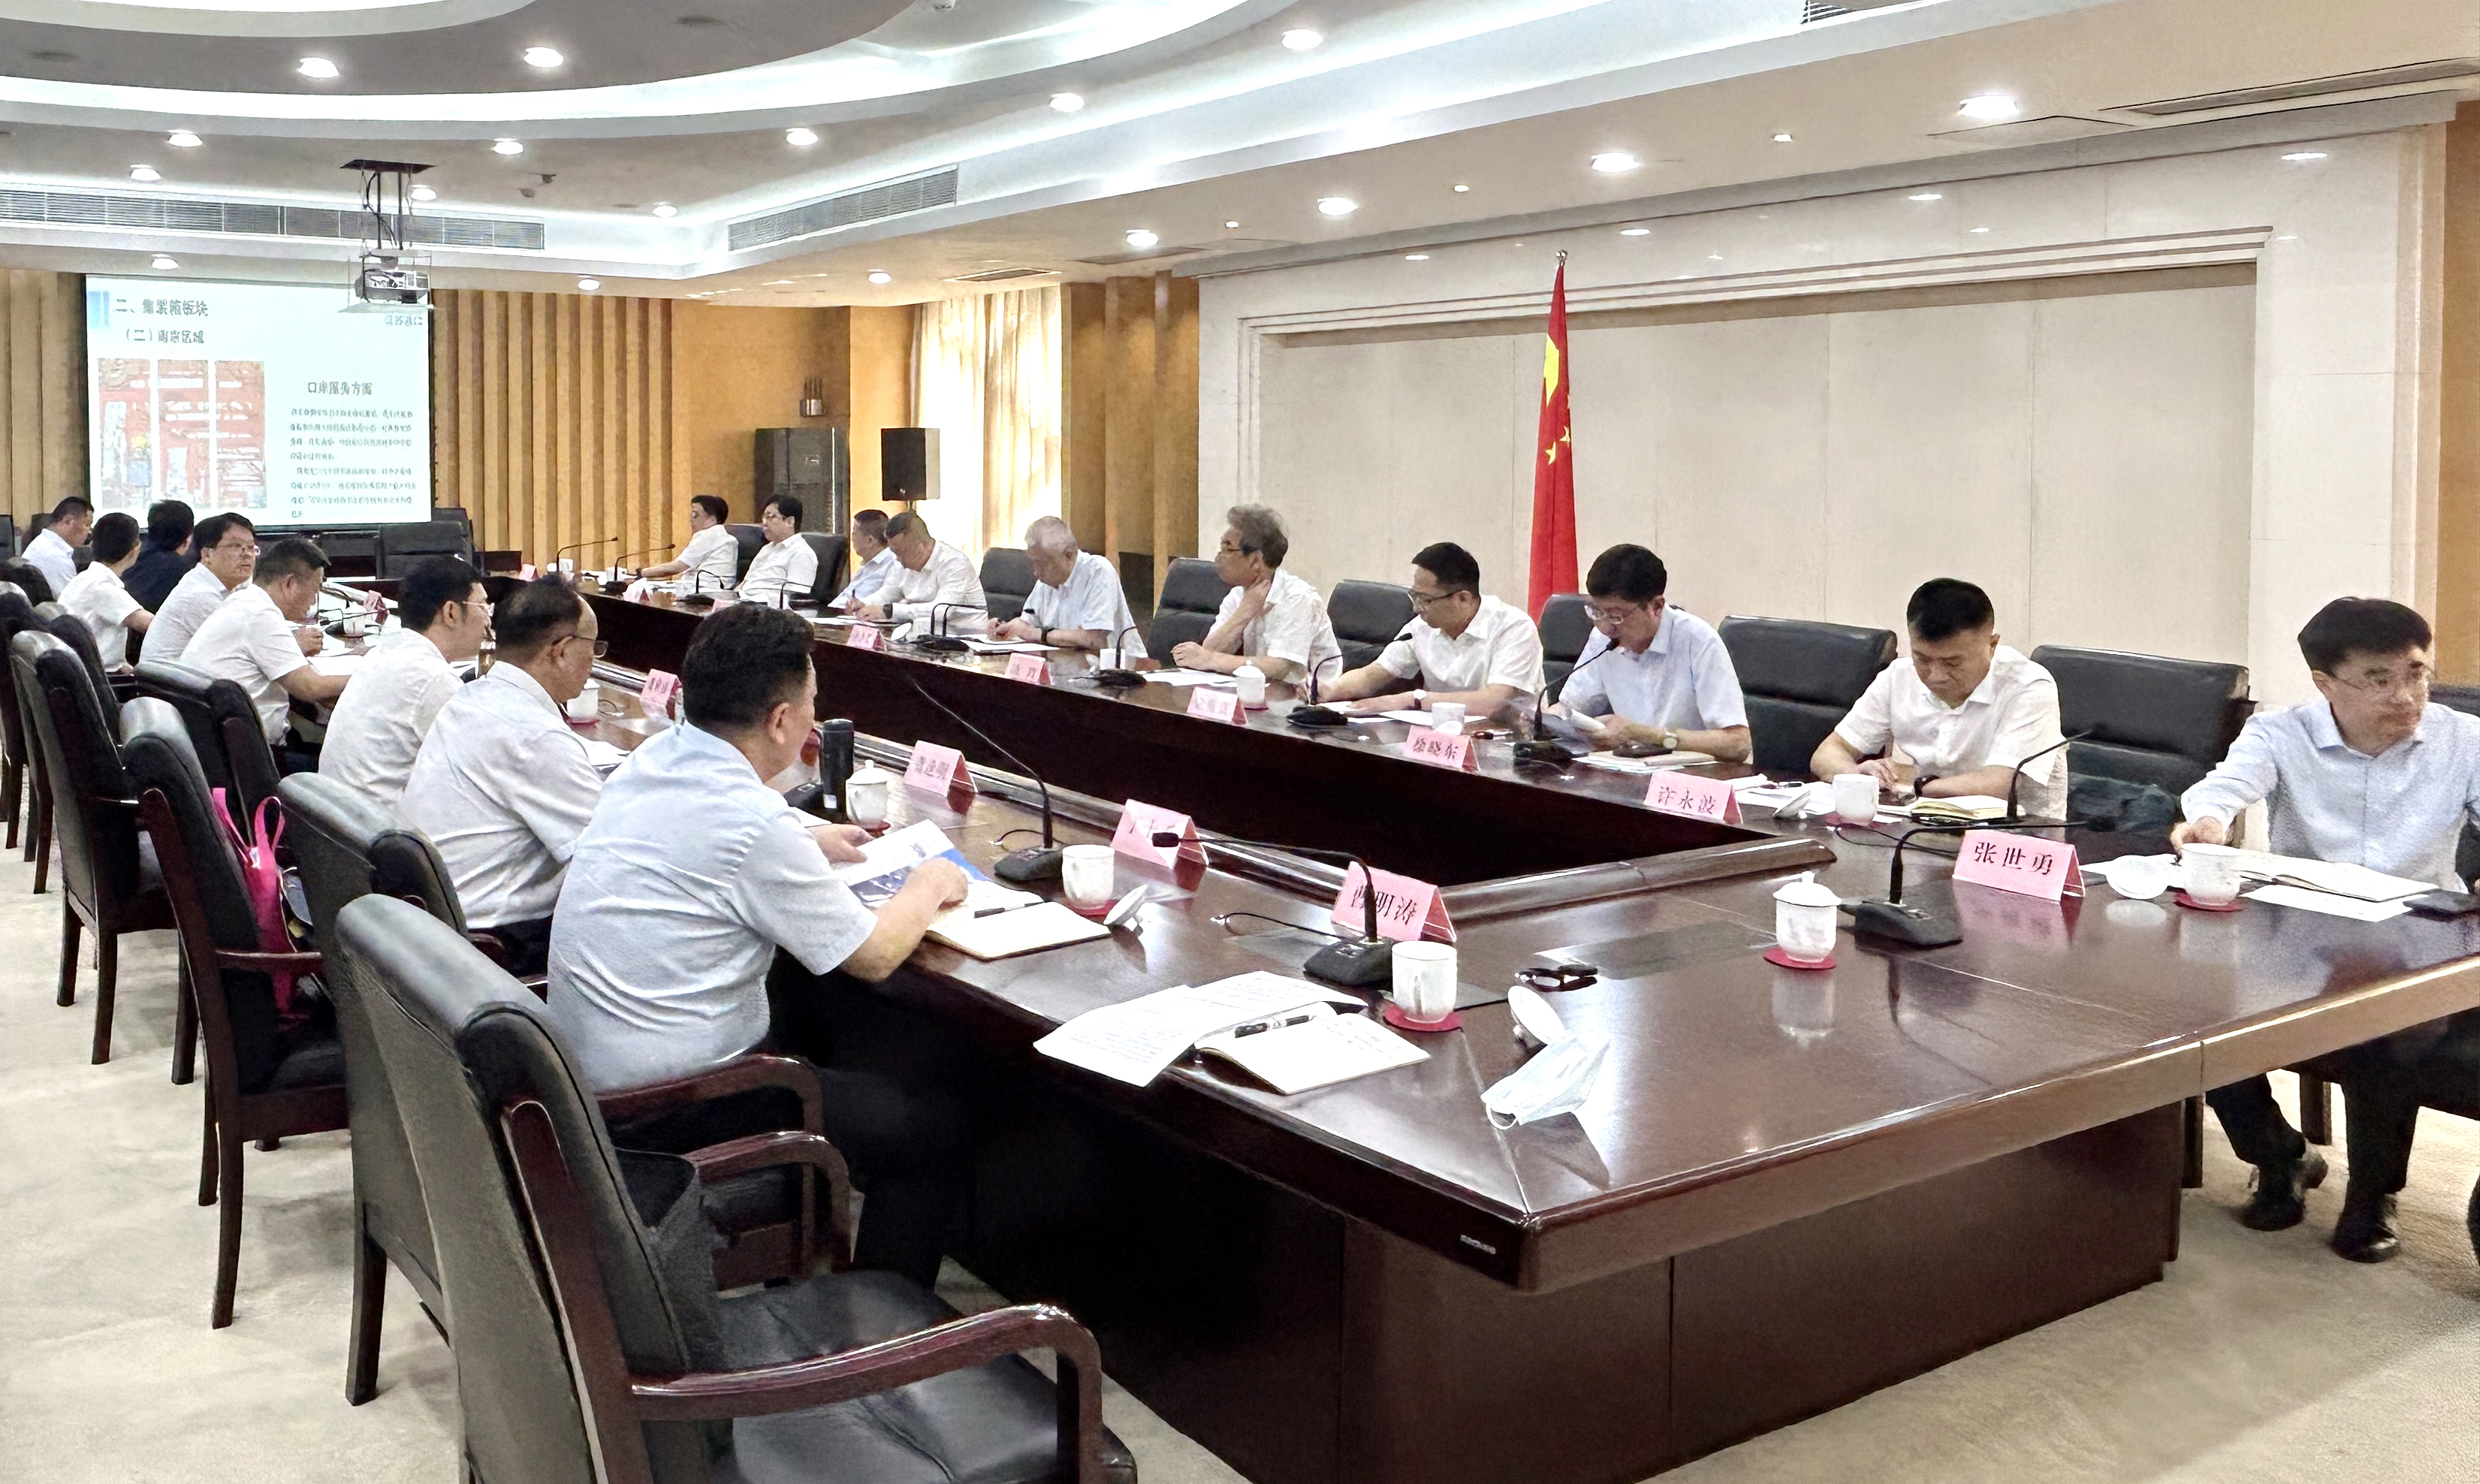 交控集团参加徐州市降低企业物流成本座谈会